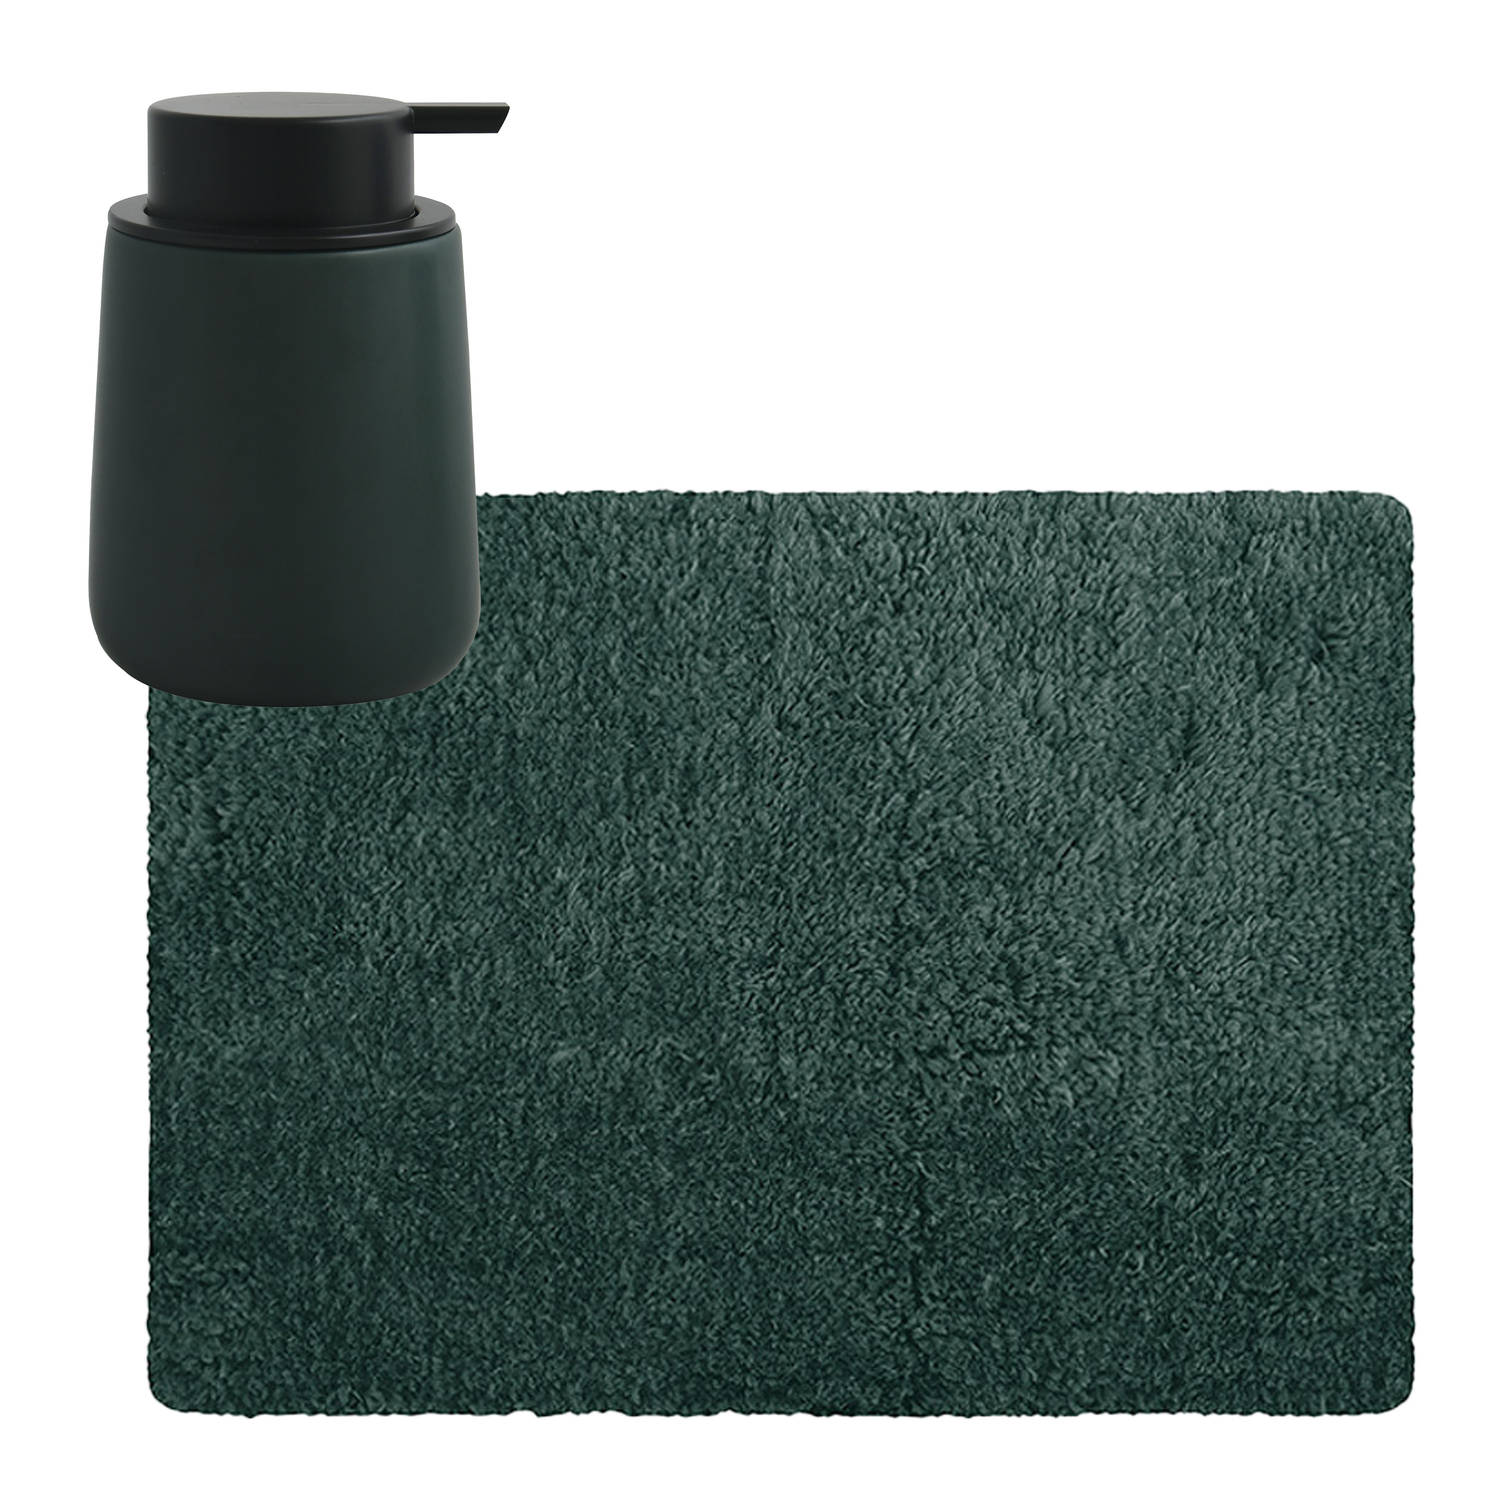 MSV badkamer droogloop tapijt Langharig 50 x 70 cm incl zeeppompje zelfde kleur donkergroen Badmatje